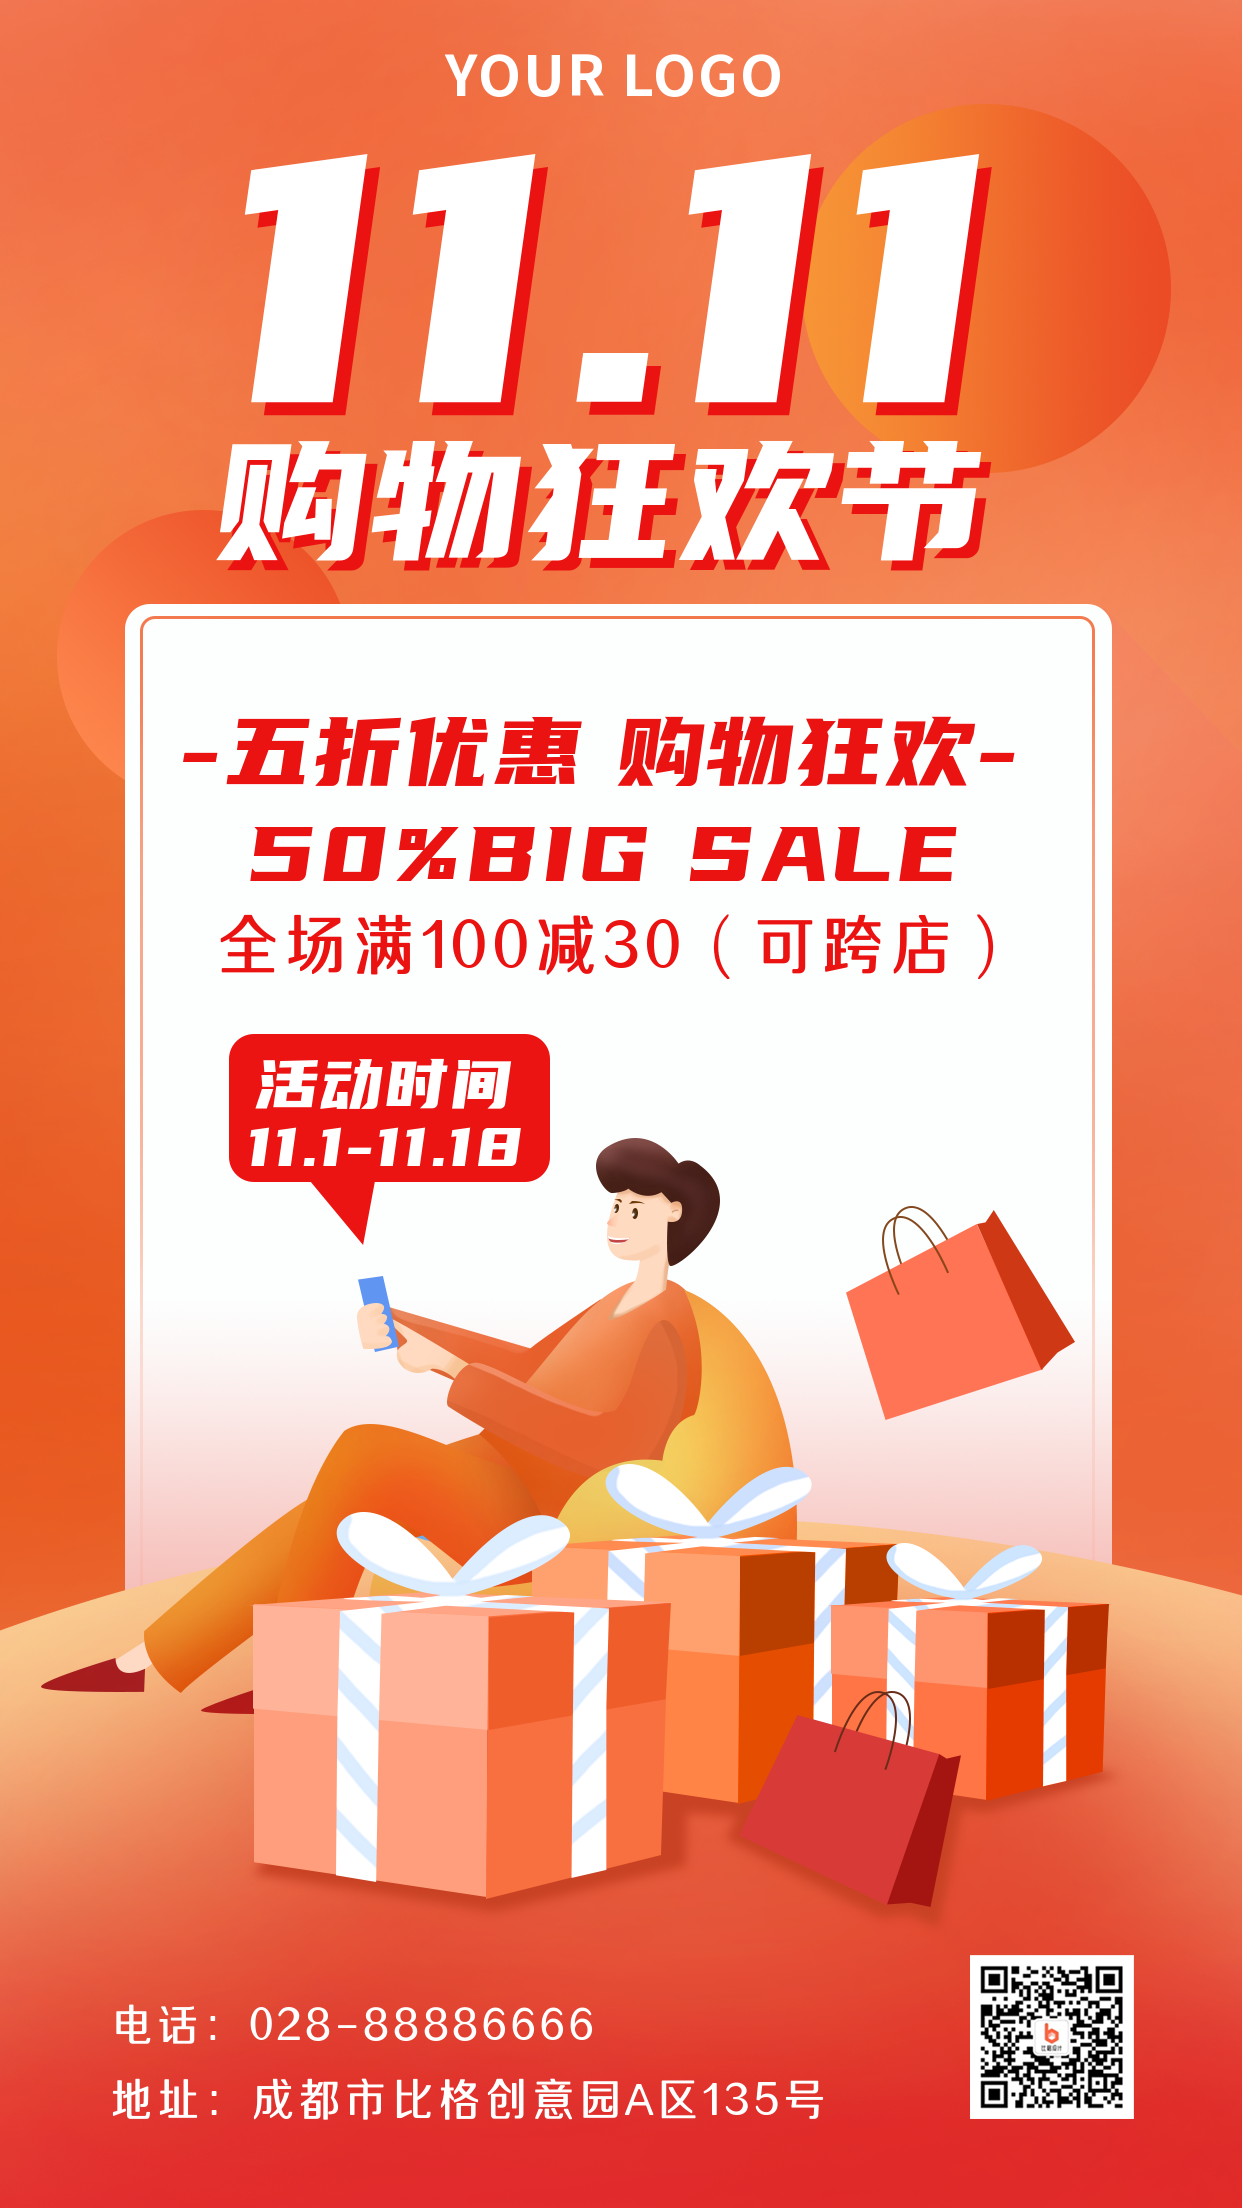 双十一购物狂欢促销活动宣传手机海报